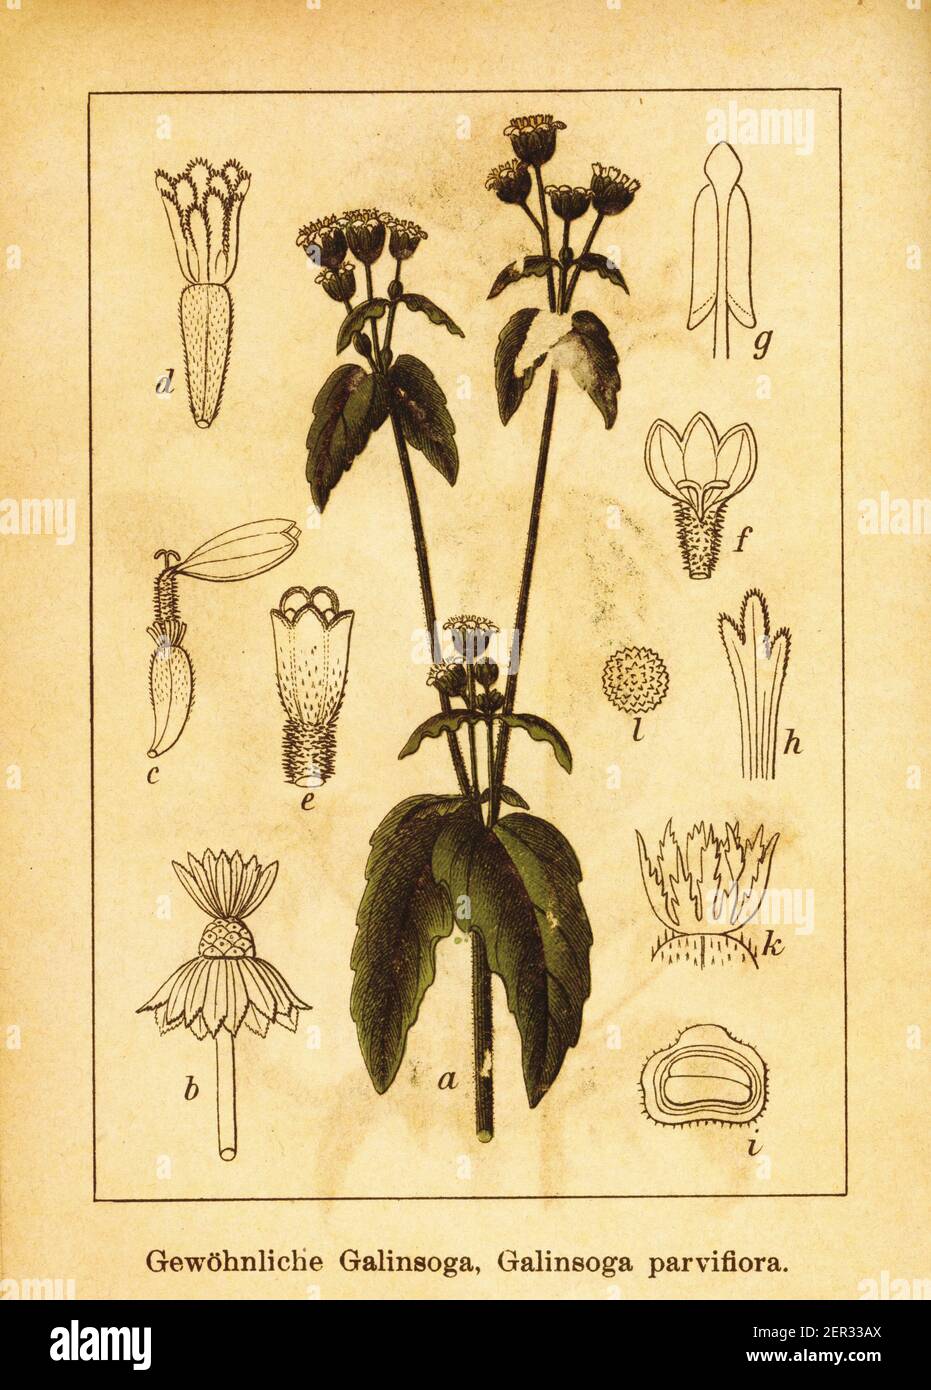 Grabado antiguo de soldado galante. Ilustración de Jacob Sturm (1771-1848) del libro Deutschlands Flora in Abbildungen nach der Natur mit Besch Foto de stock